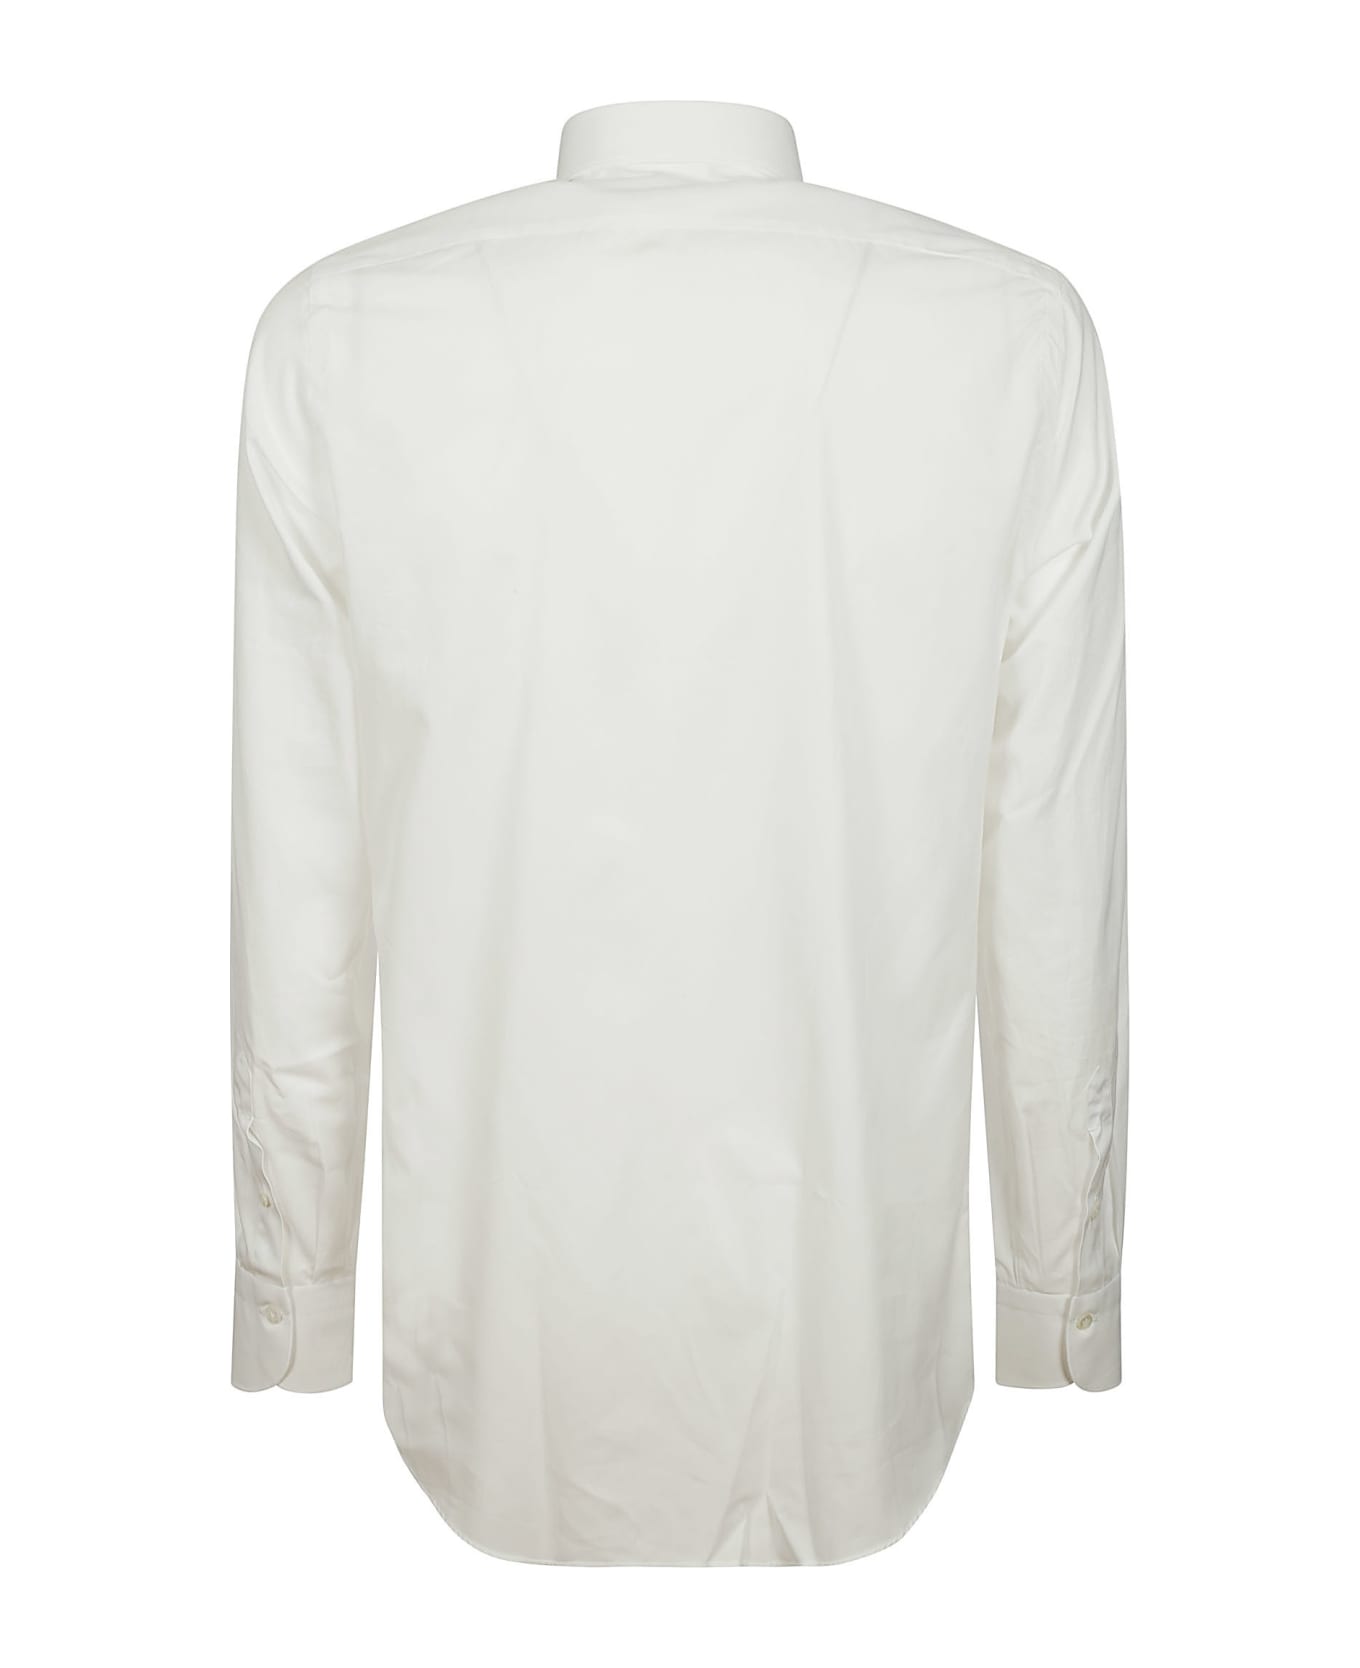 Finamore Shirt 170.2 - White シャツ